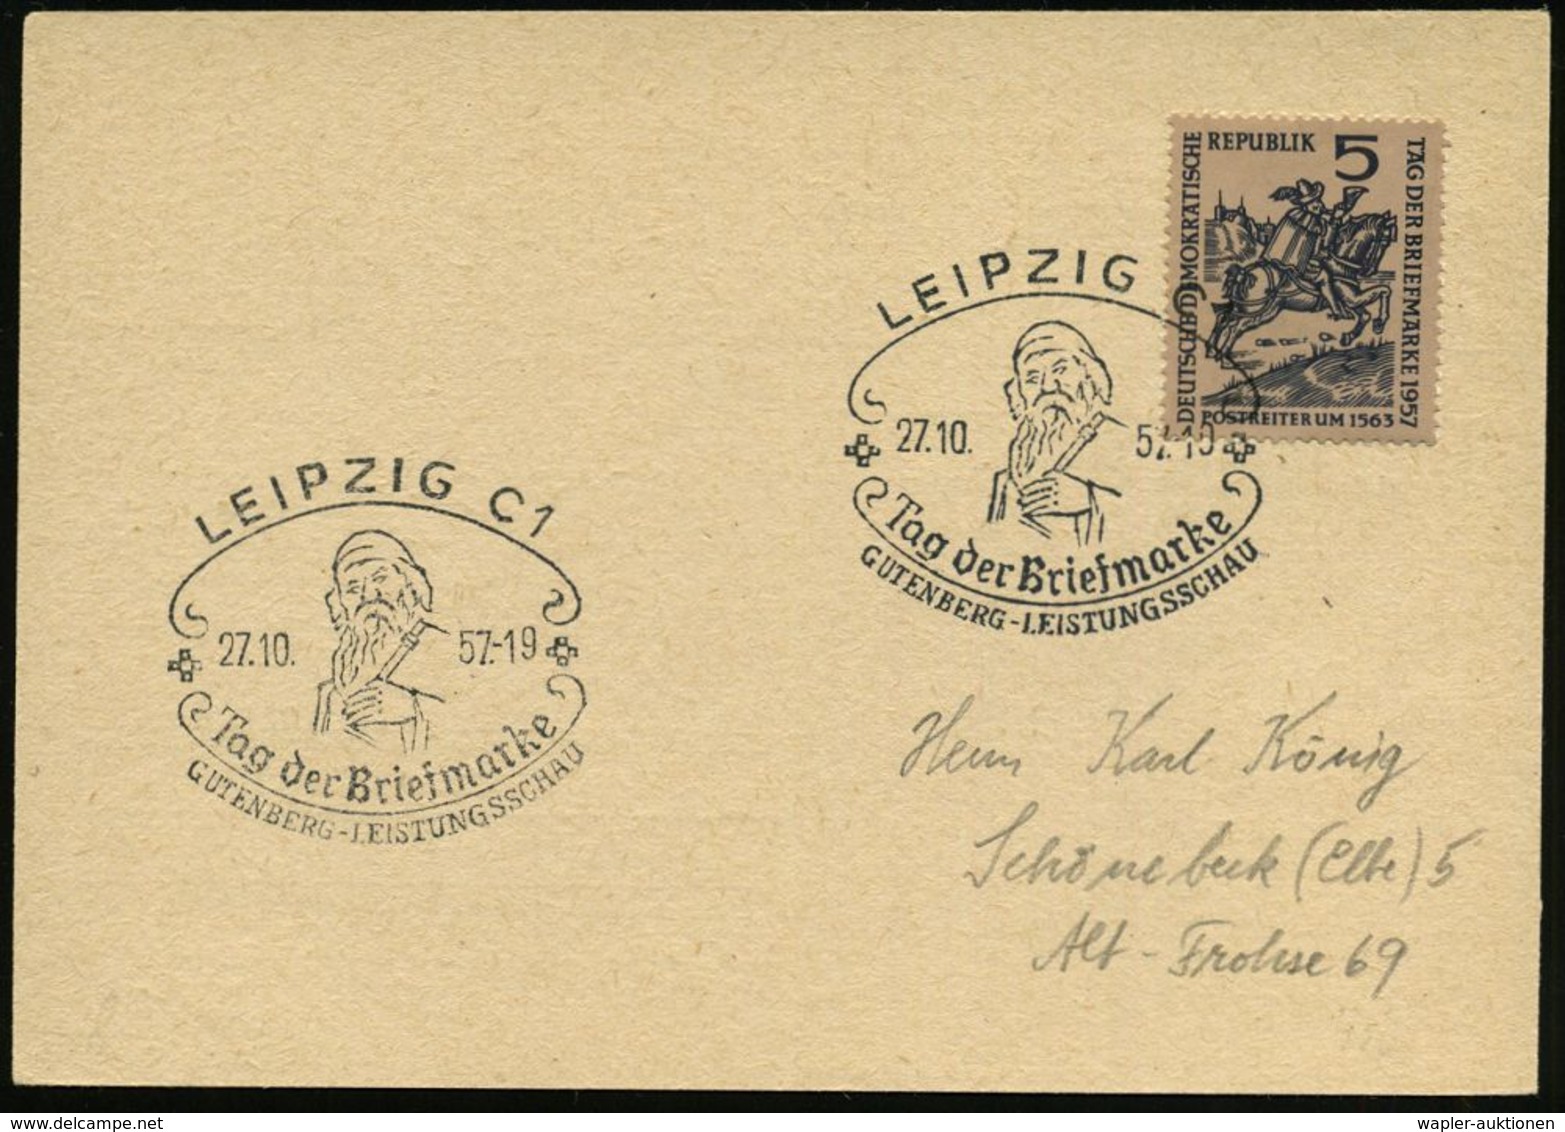 GUTENBERG & DRUCK-PIONIERE : LEIPZIG C1/ Tag Der Briefmarke/ GUTENBERG-LEISTUNGSSCHAU 1957 (26.10.) SSt = Gutenberg Auf  - Non Classés